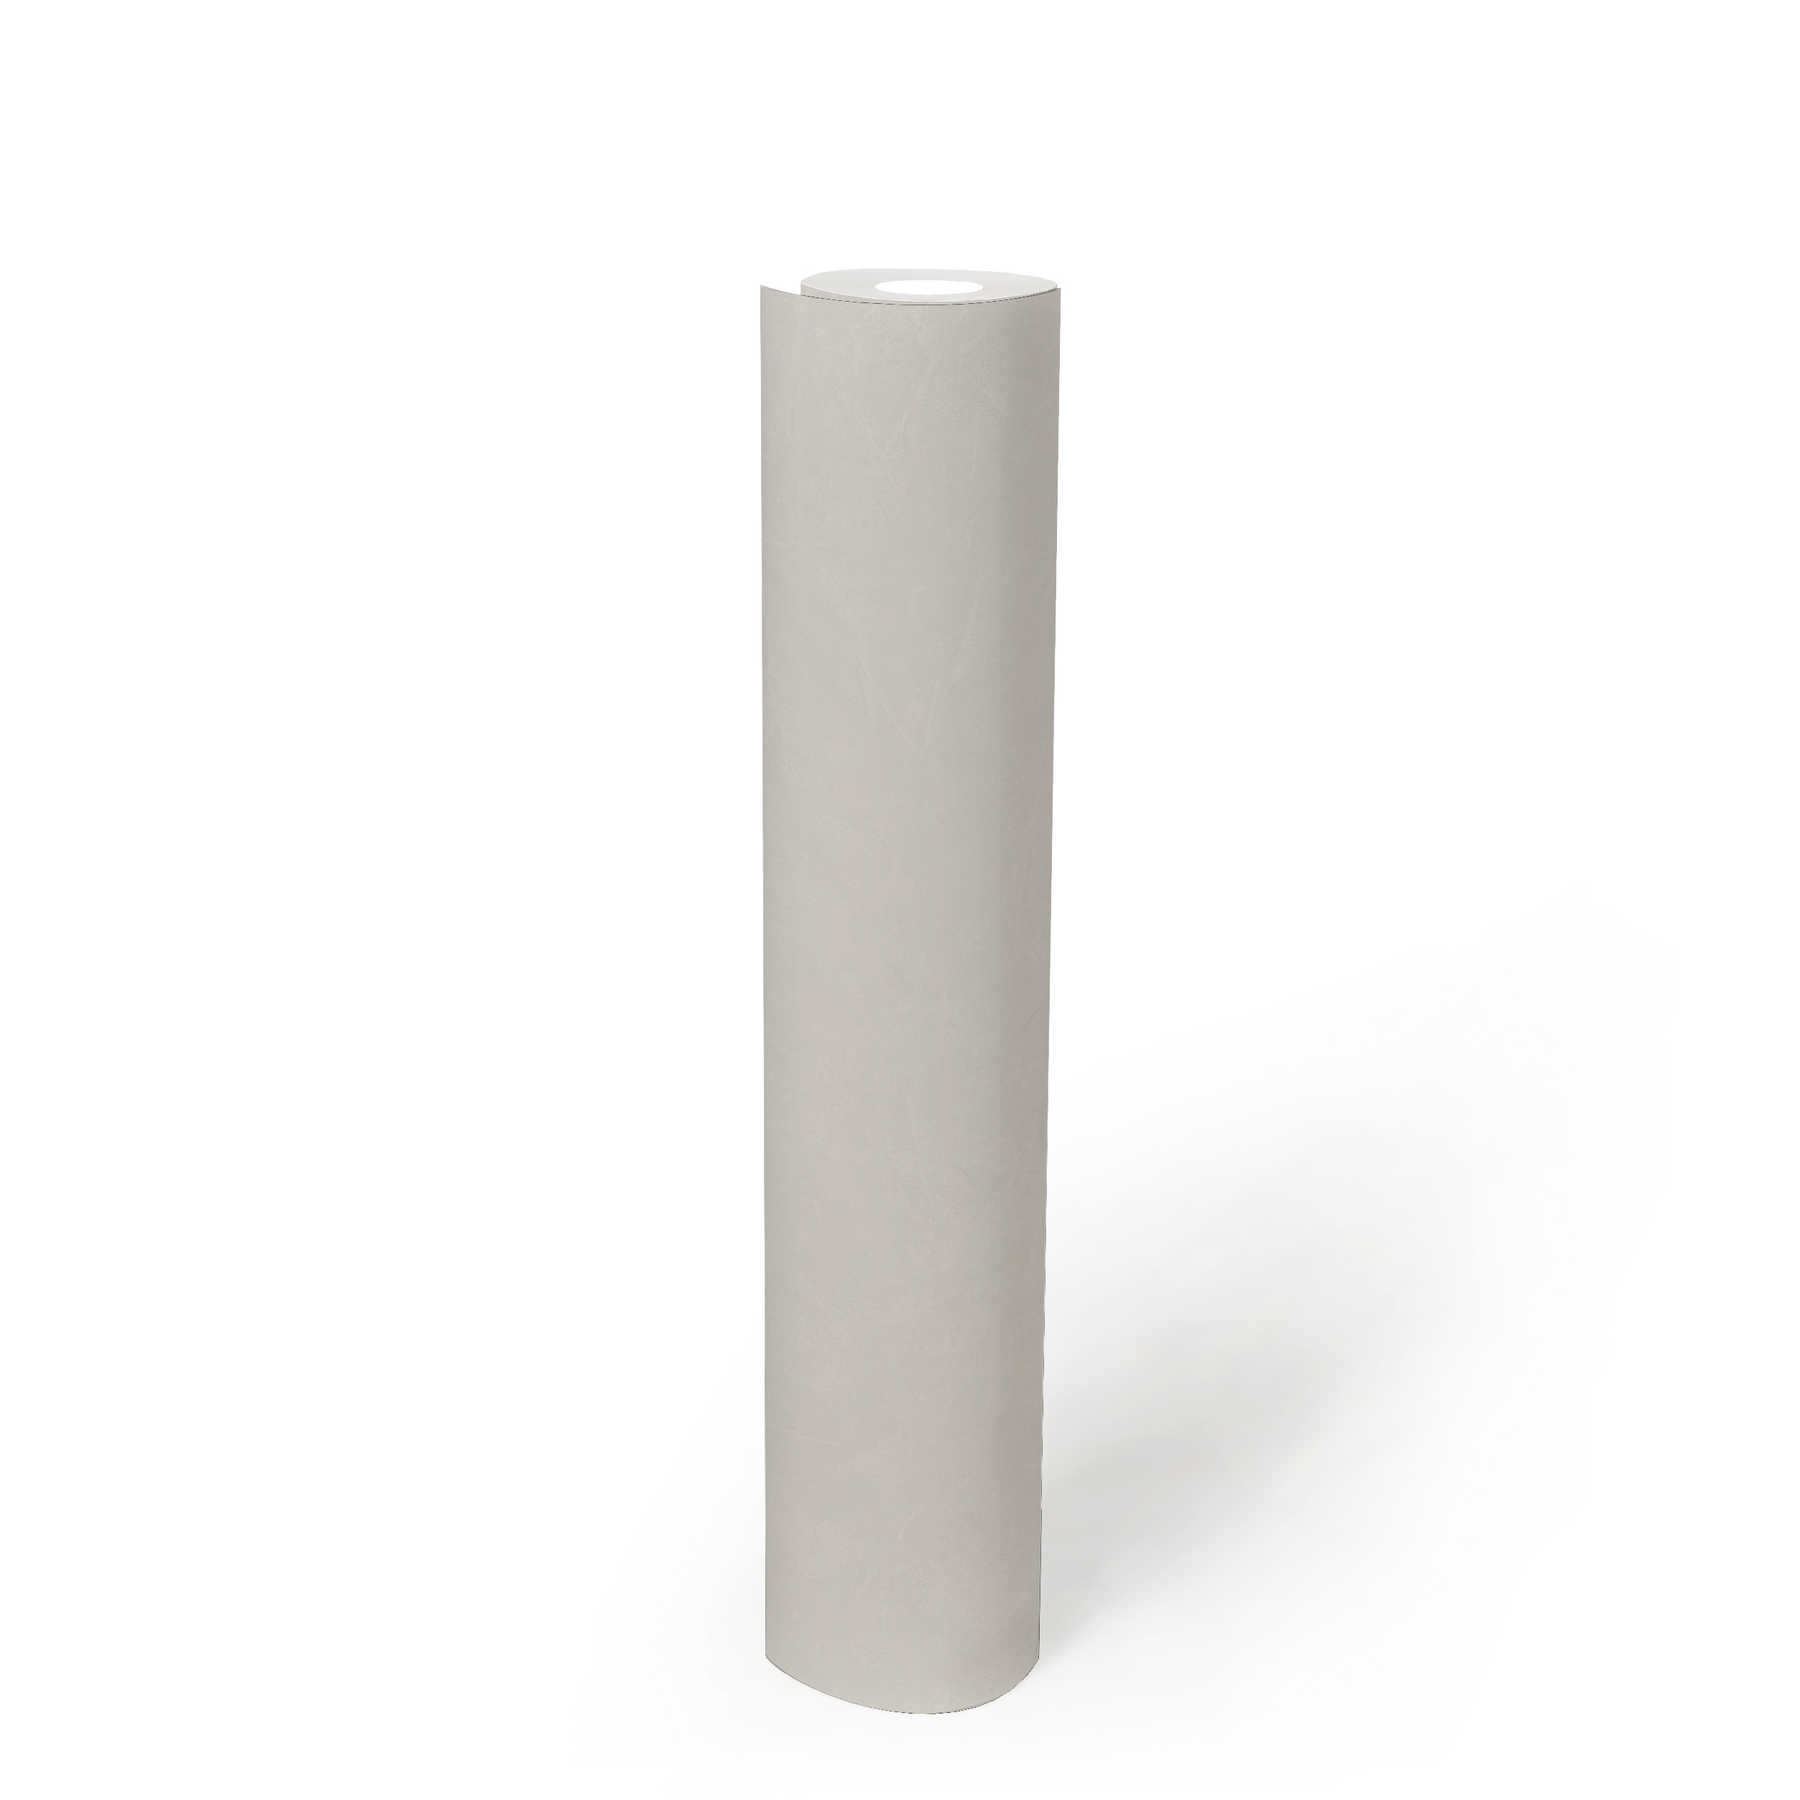             Putz-Tapete einfarbig mit Strukturmuster – Creme, Weiß
        